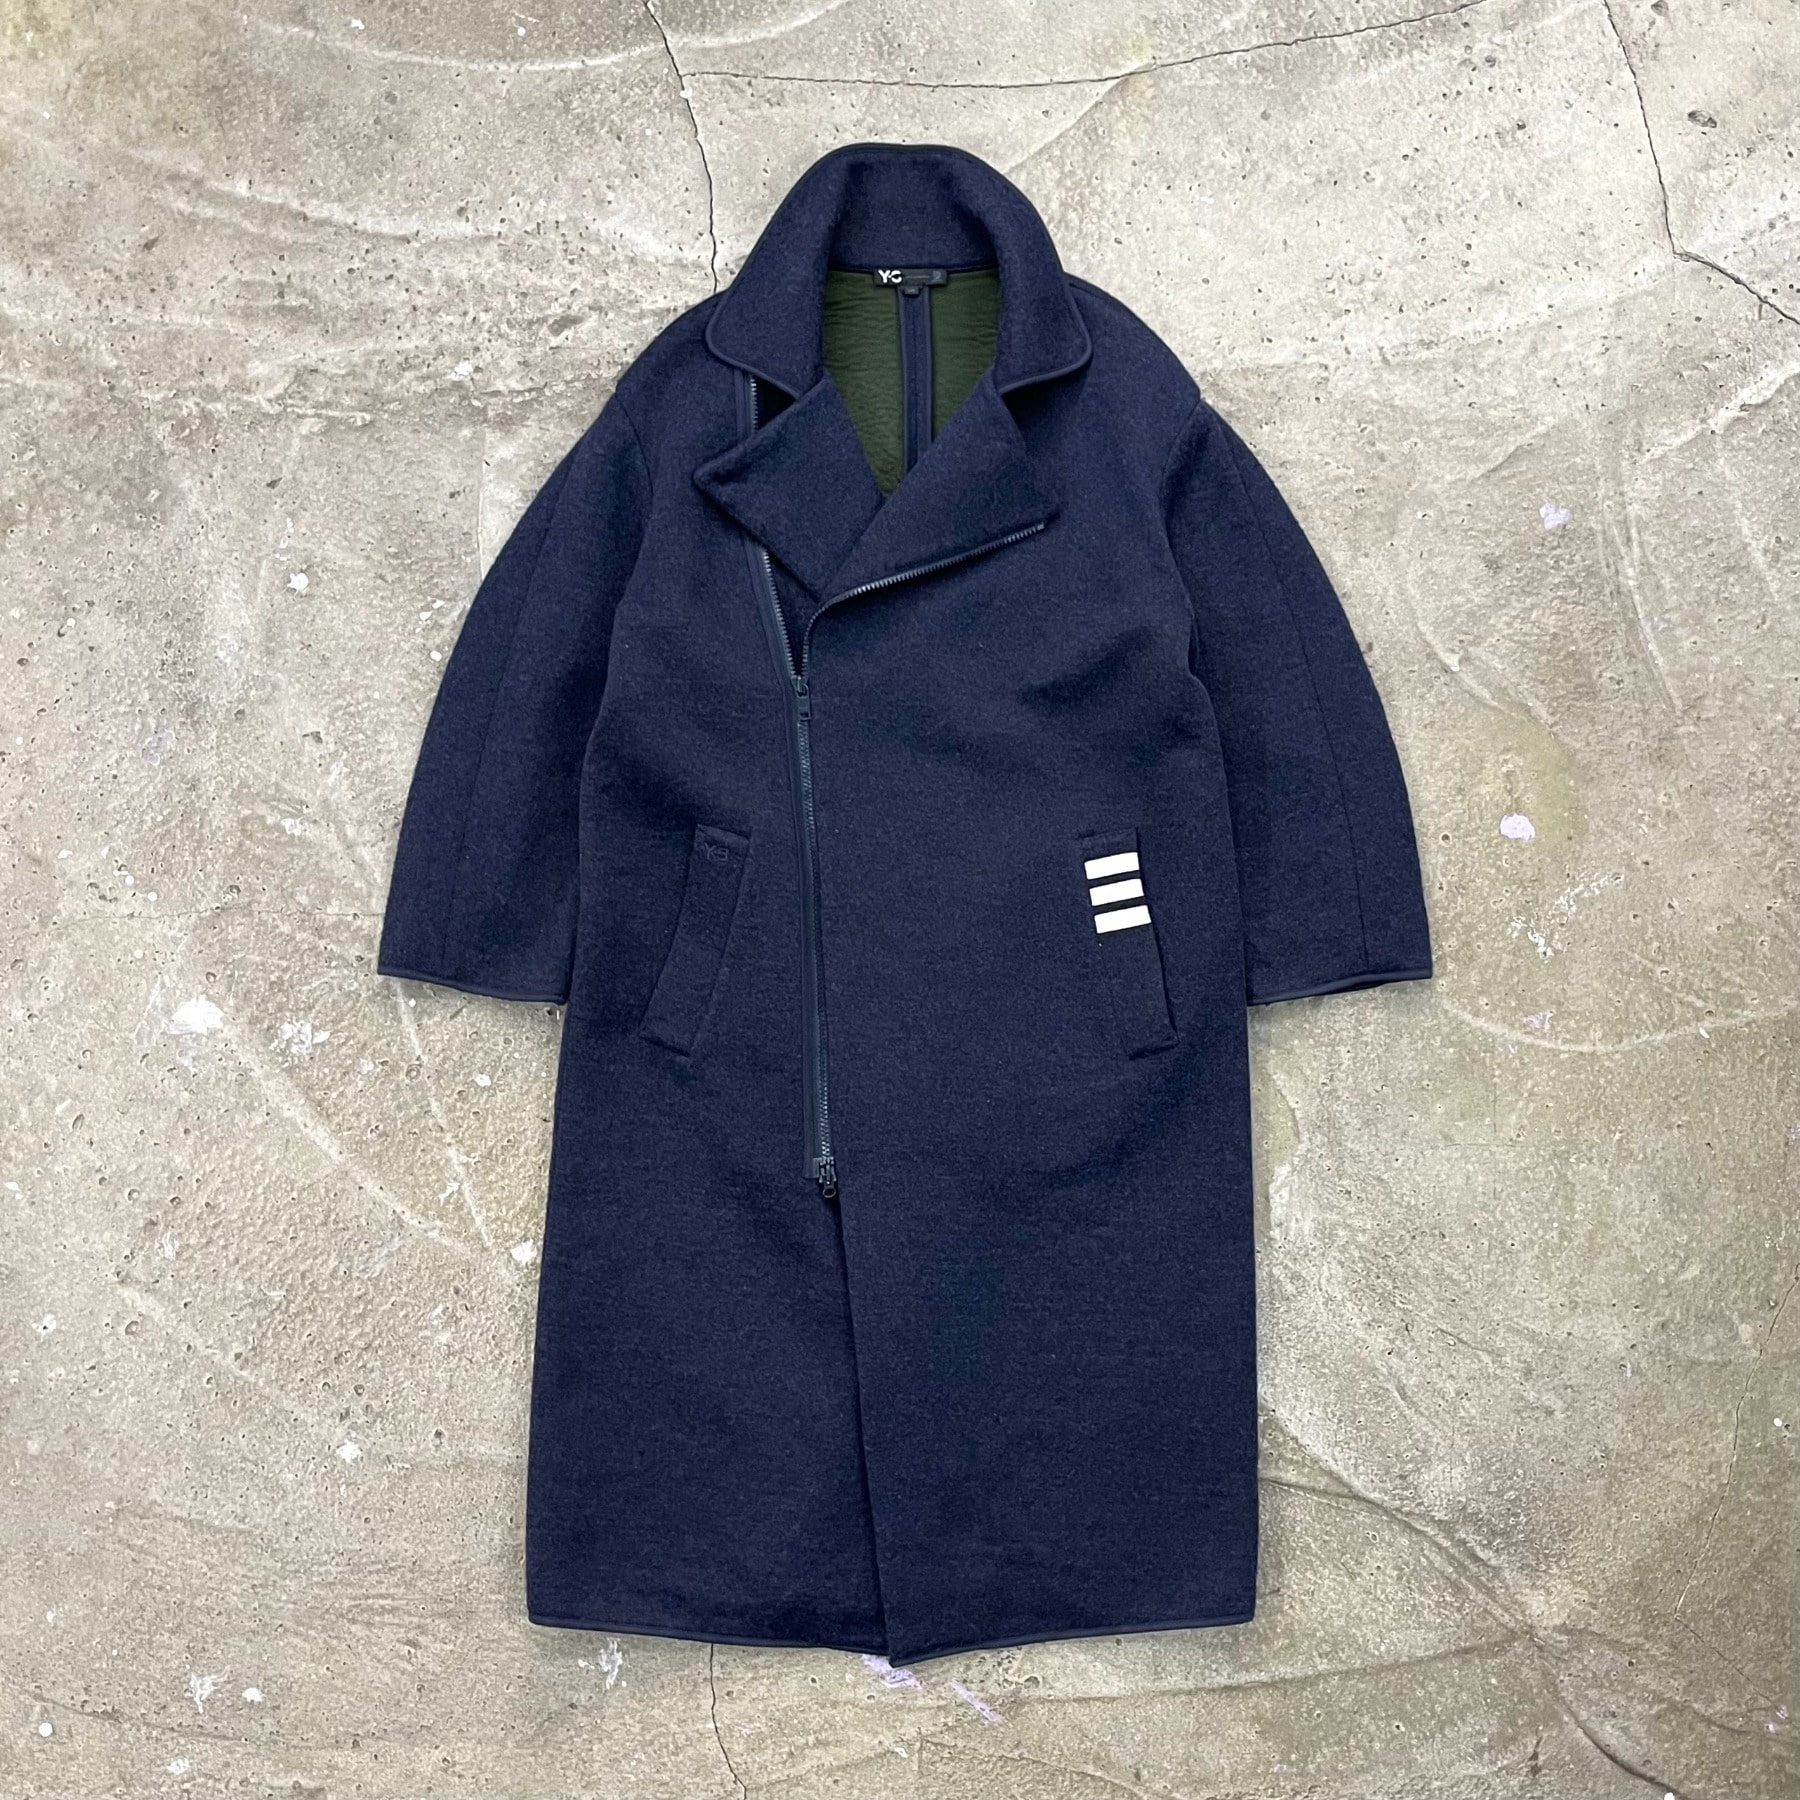 2015 Y-3 Zip Coat - Size L